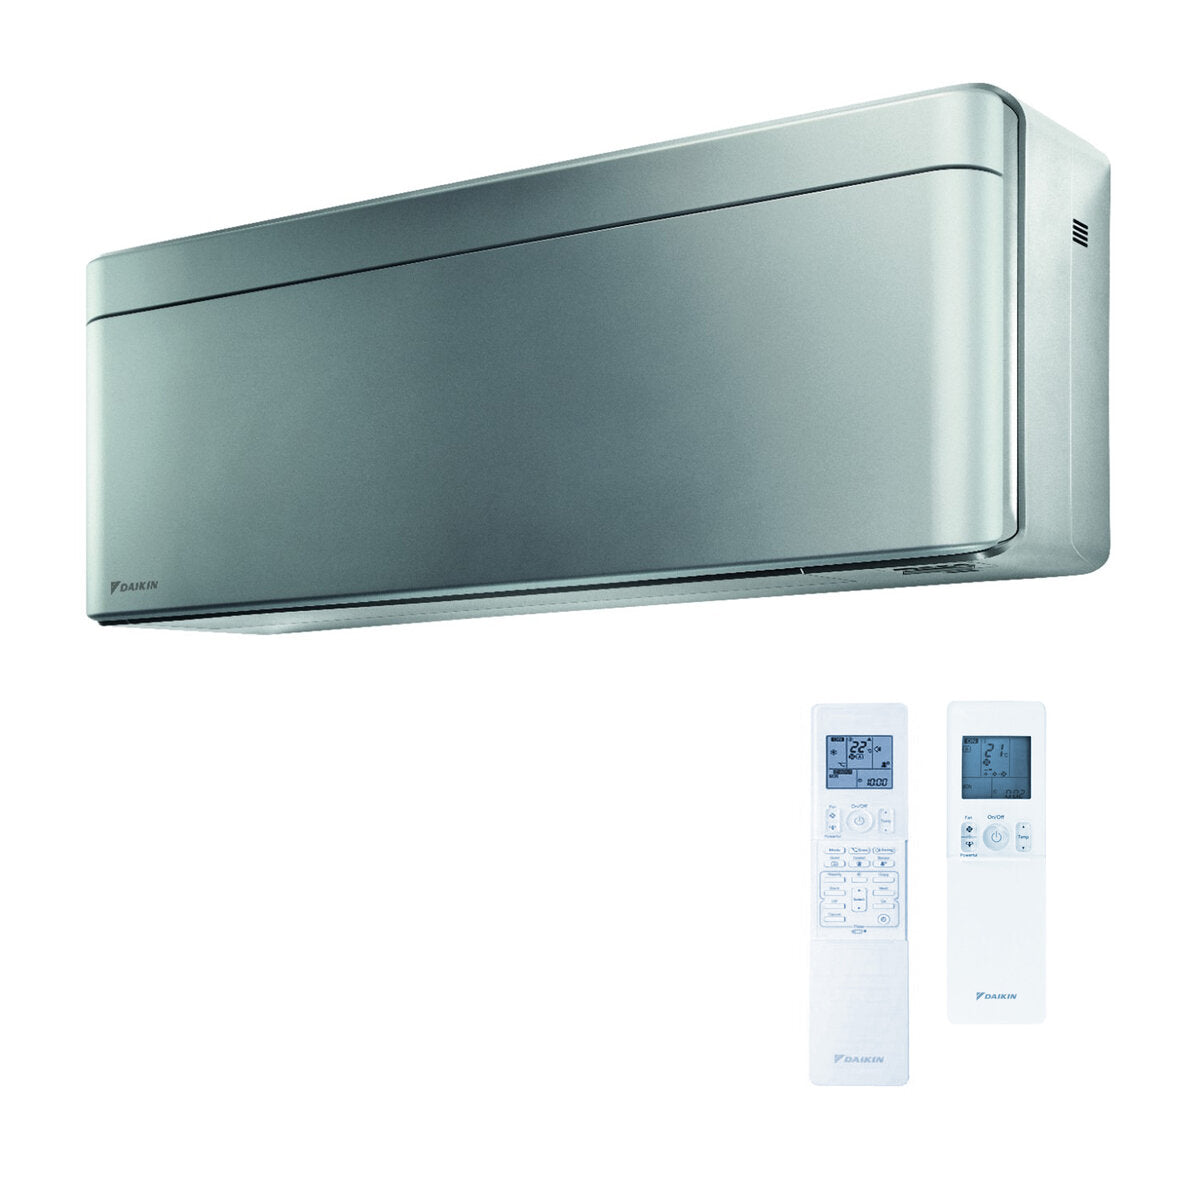 Daikin Stylish trial split air conditioner 5000 + 7000 + 15000 BTU inverter A +++ wifi outdoor unit 5.2 kW